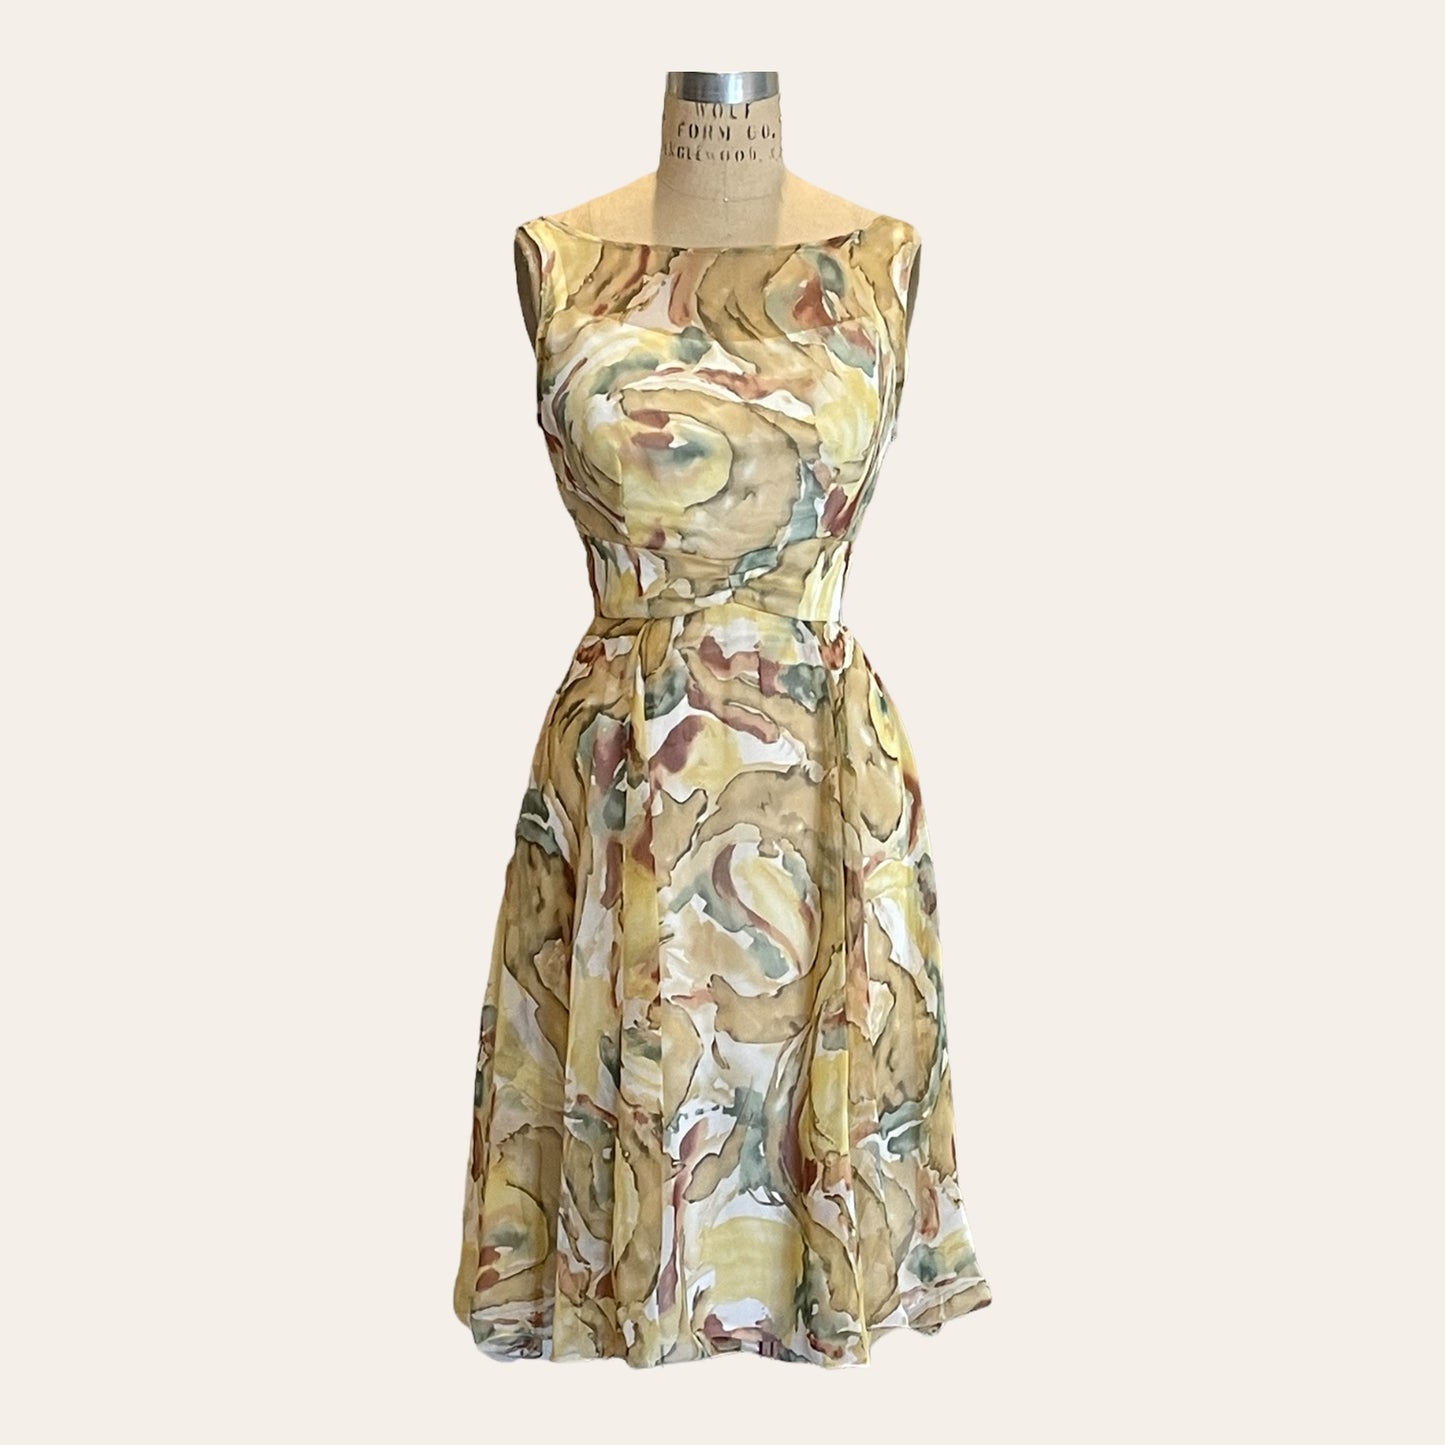 AUDREY - Vintage 1990s Dress size 4